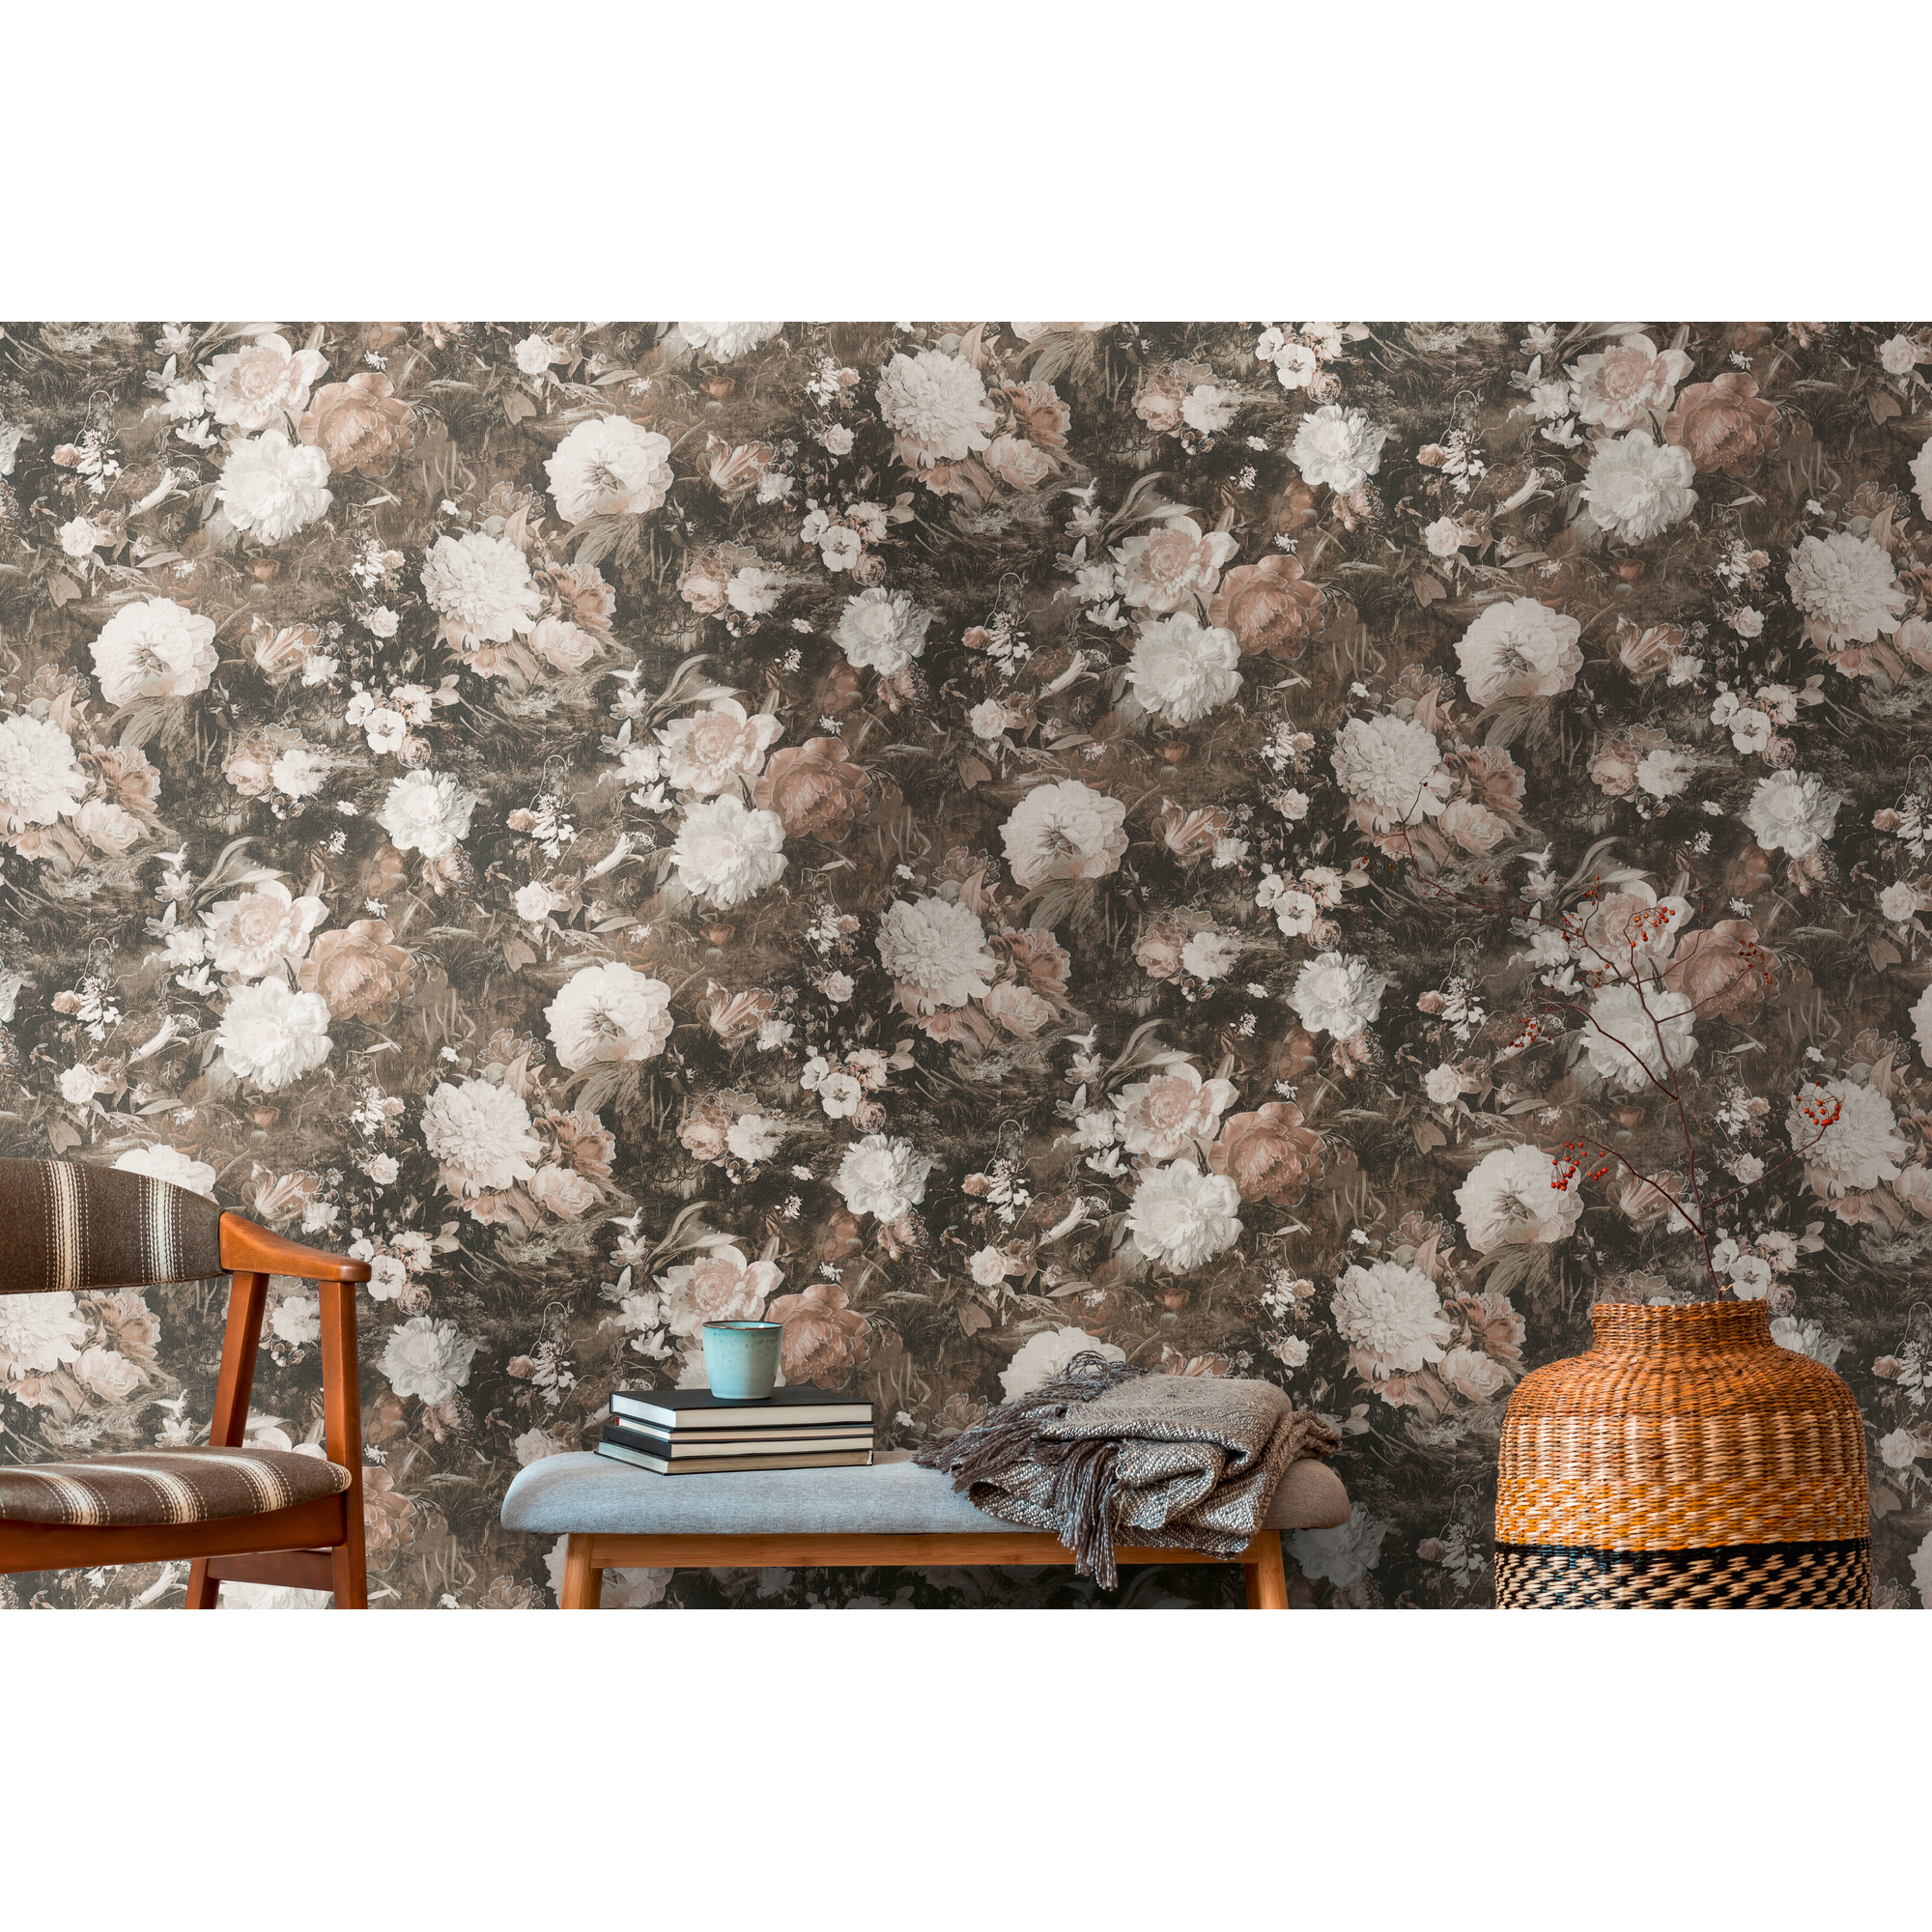 Vliestapete 'The BoS' Vintageblumen braun/weiß 10,05 x 0,53 m + product picture